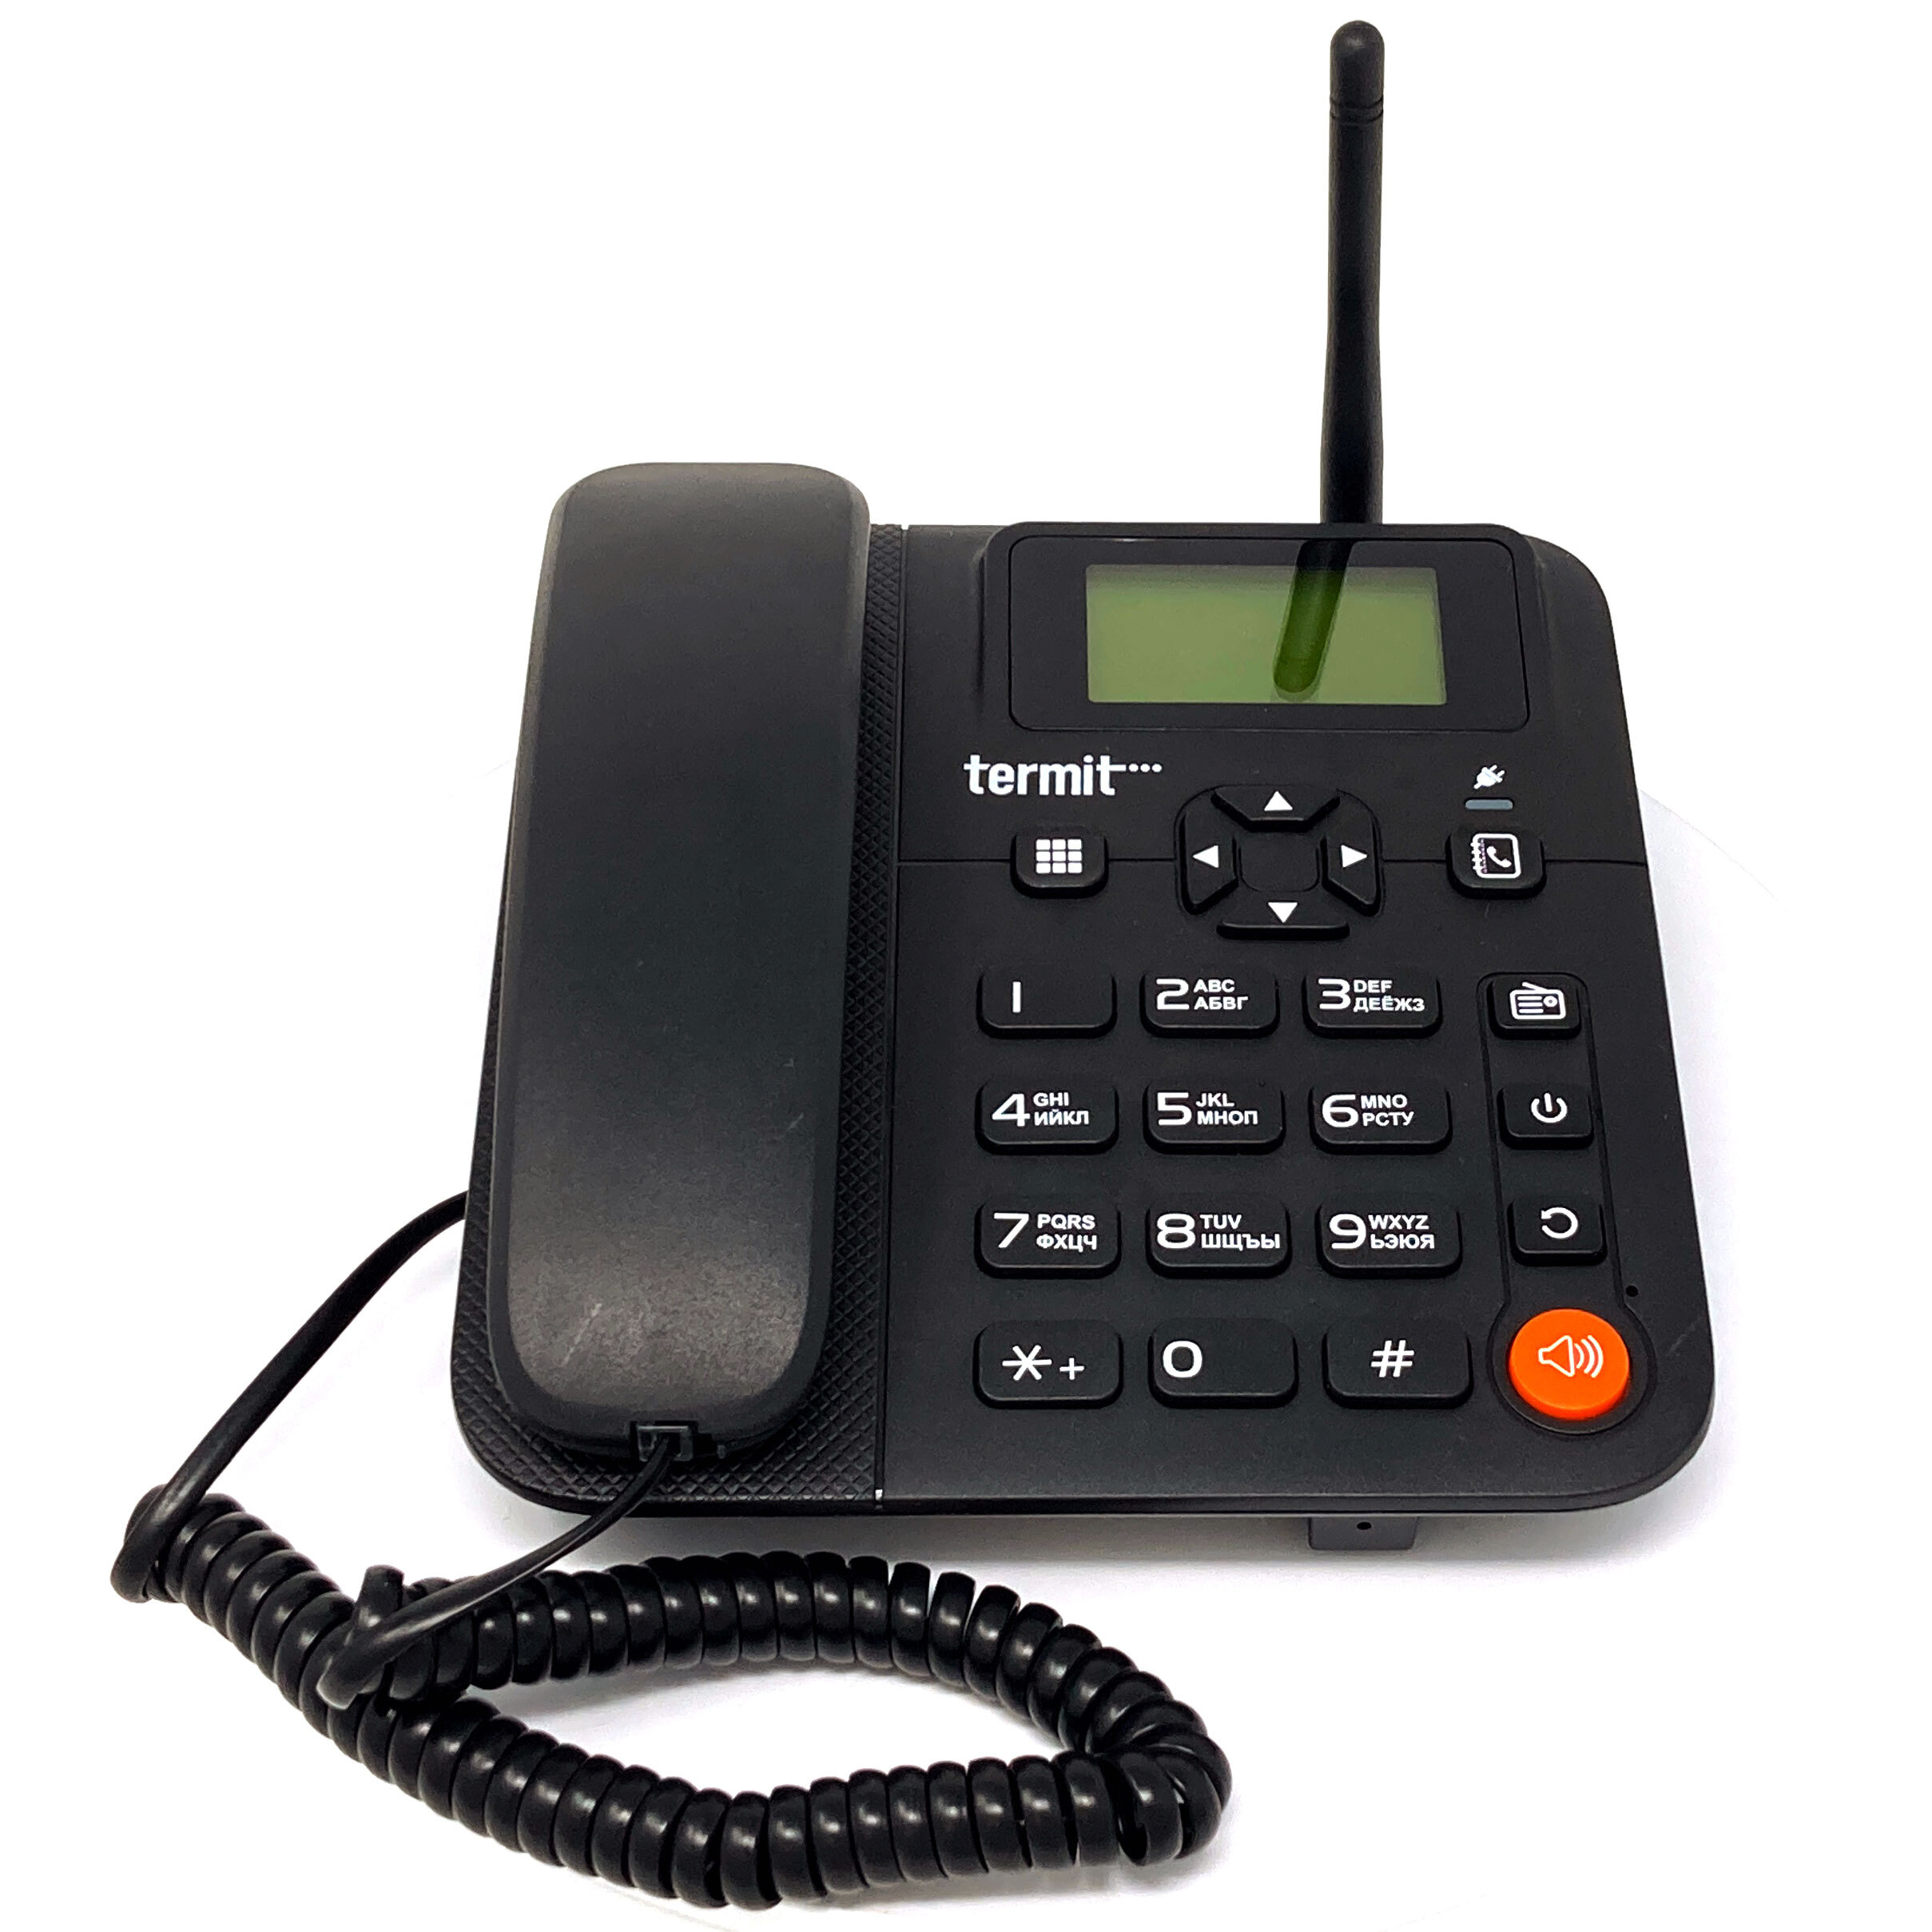 Стационарная мобильная связь. Termit FIXPHONE v2. Стационарный сотовый телефон Termit FIXPHONE v2. Termit FIXPHONE v2 Rev.3.1.0. Стационарный GSM-телефон Termit FIXPHONE v2 Rev.3.1.0.